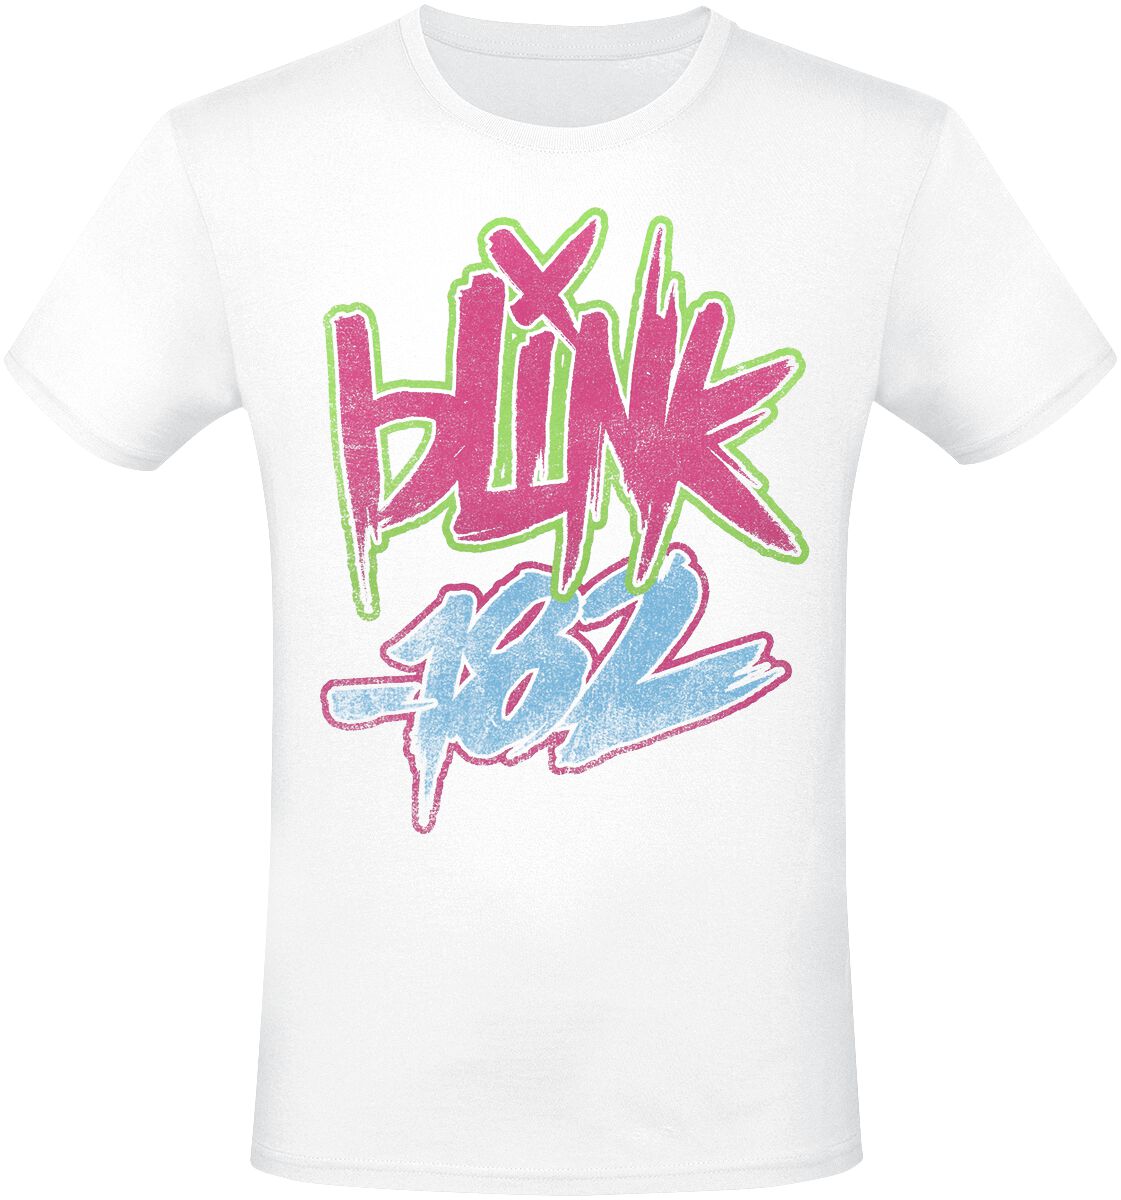 Blink-182 T-Shirt - Text - S bis 3XL - für Männer - Größe XXL - weiß  - Lizenziertes Merchandise!